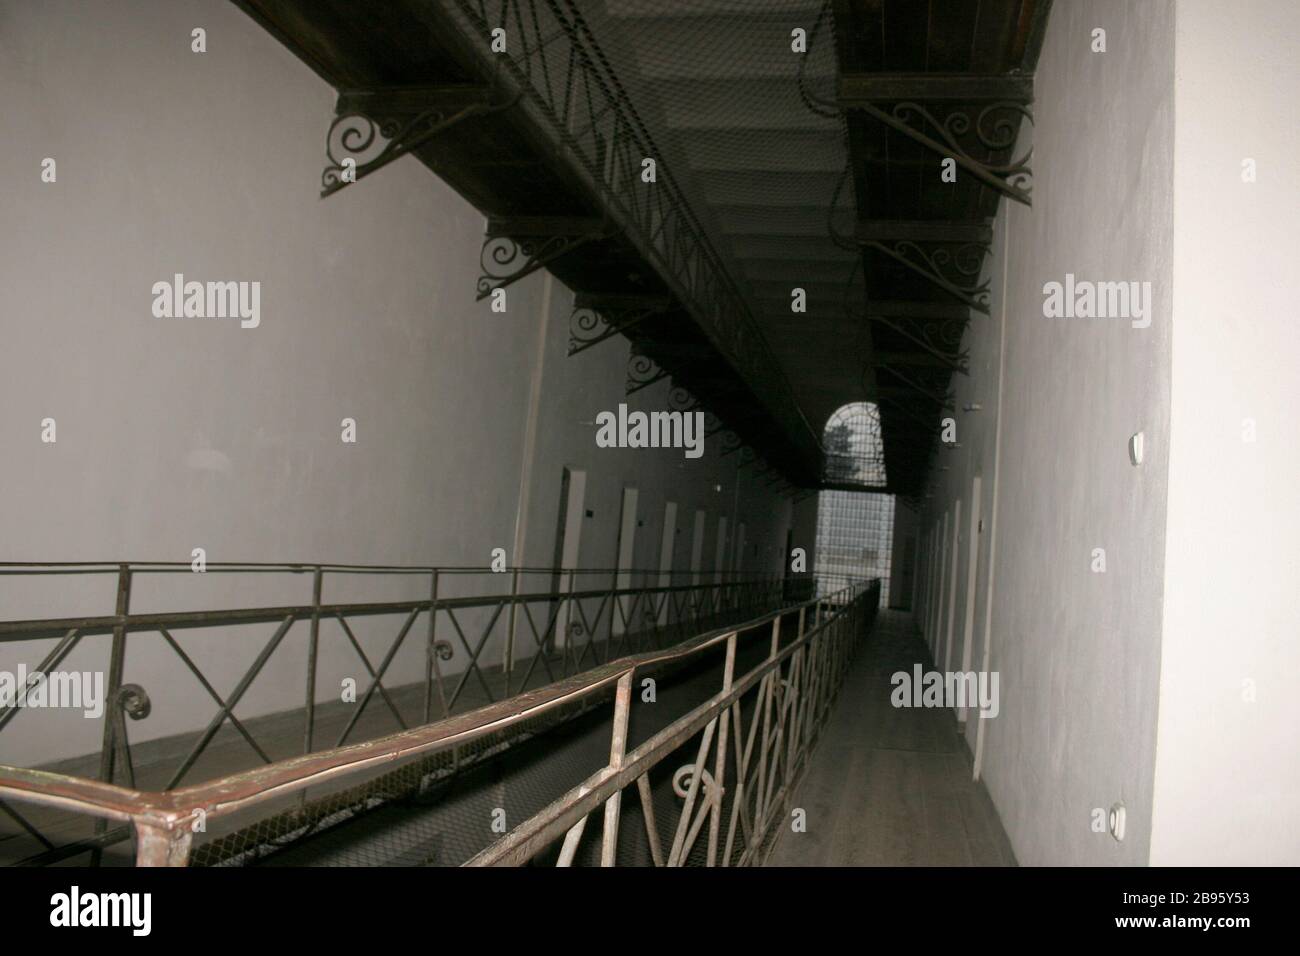 Innenansicht des Gefängnisses Sighet, ehemaliges kommunistisches politisches Gefängnis in Rumänien, heute ein Gedenkmuseum Stockfoto